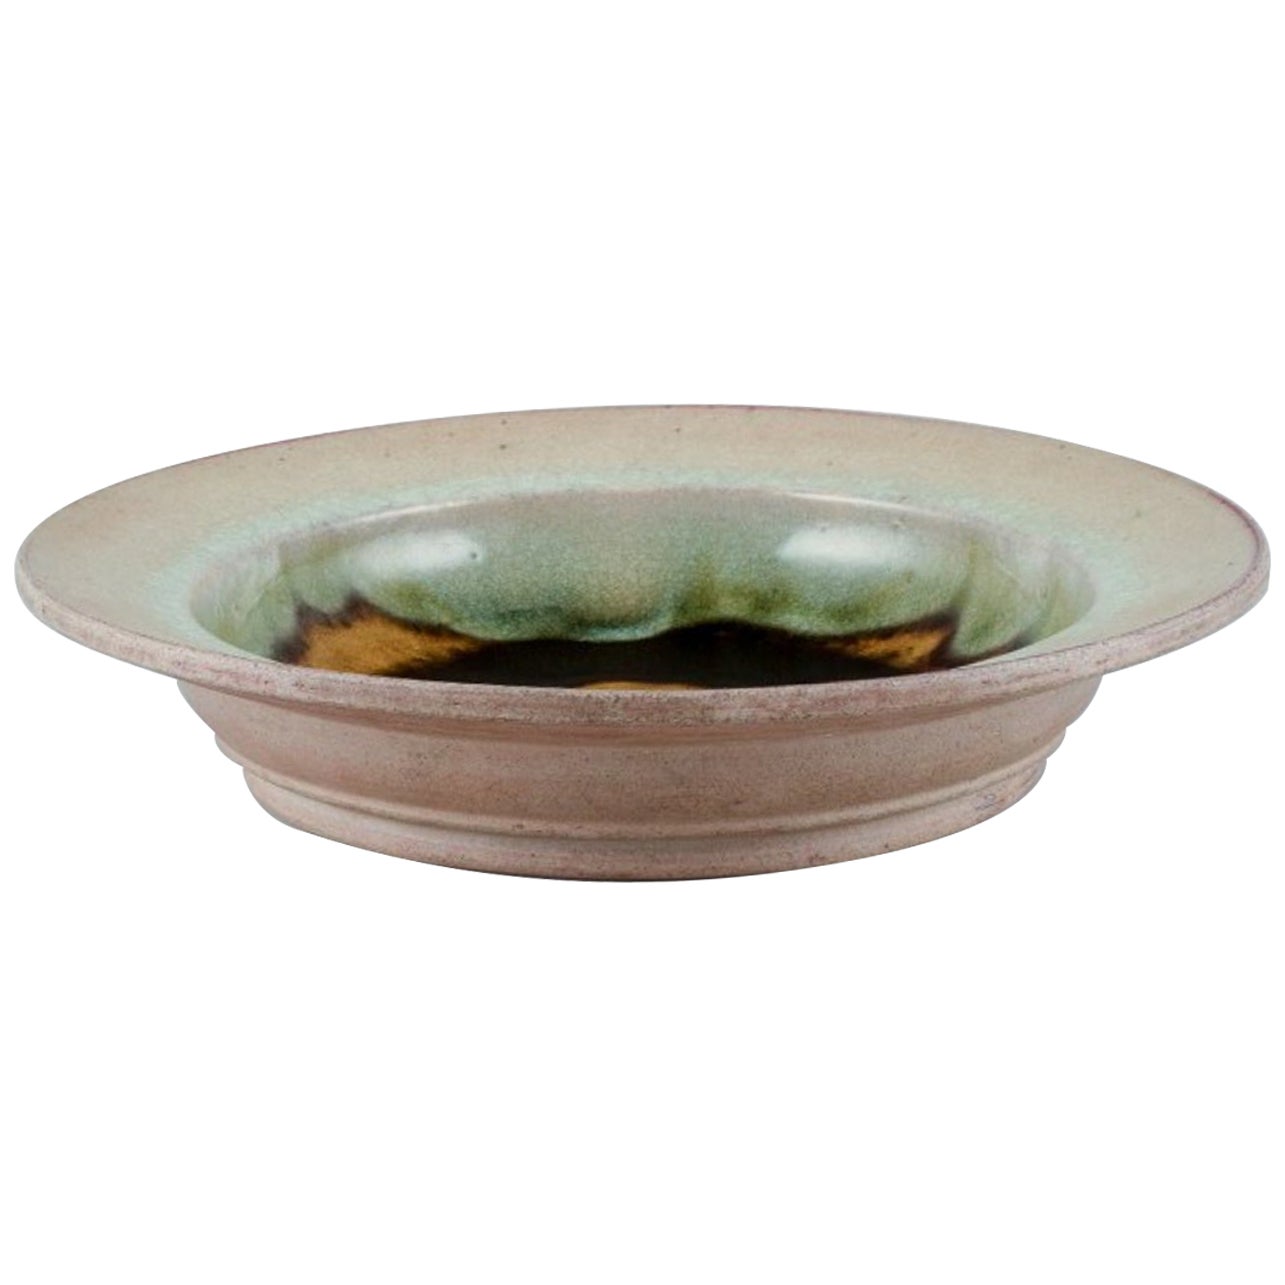 Nils Kähler for Kähler. Large ceramic bowl in modernist design. For Sale